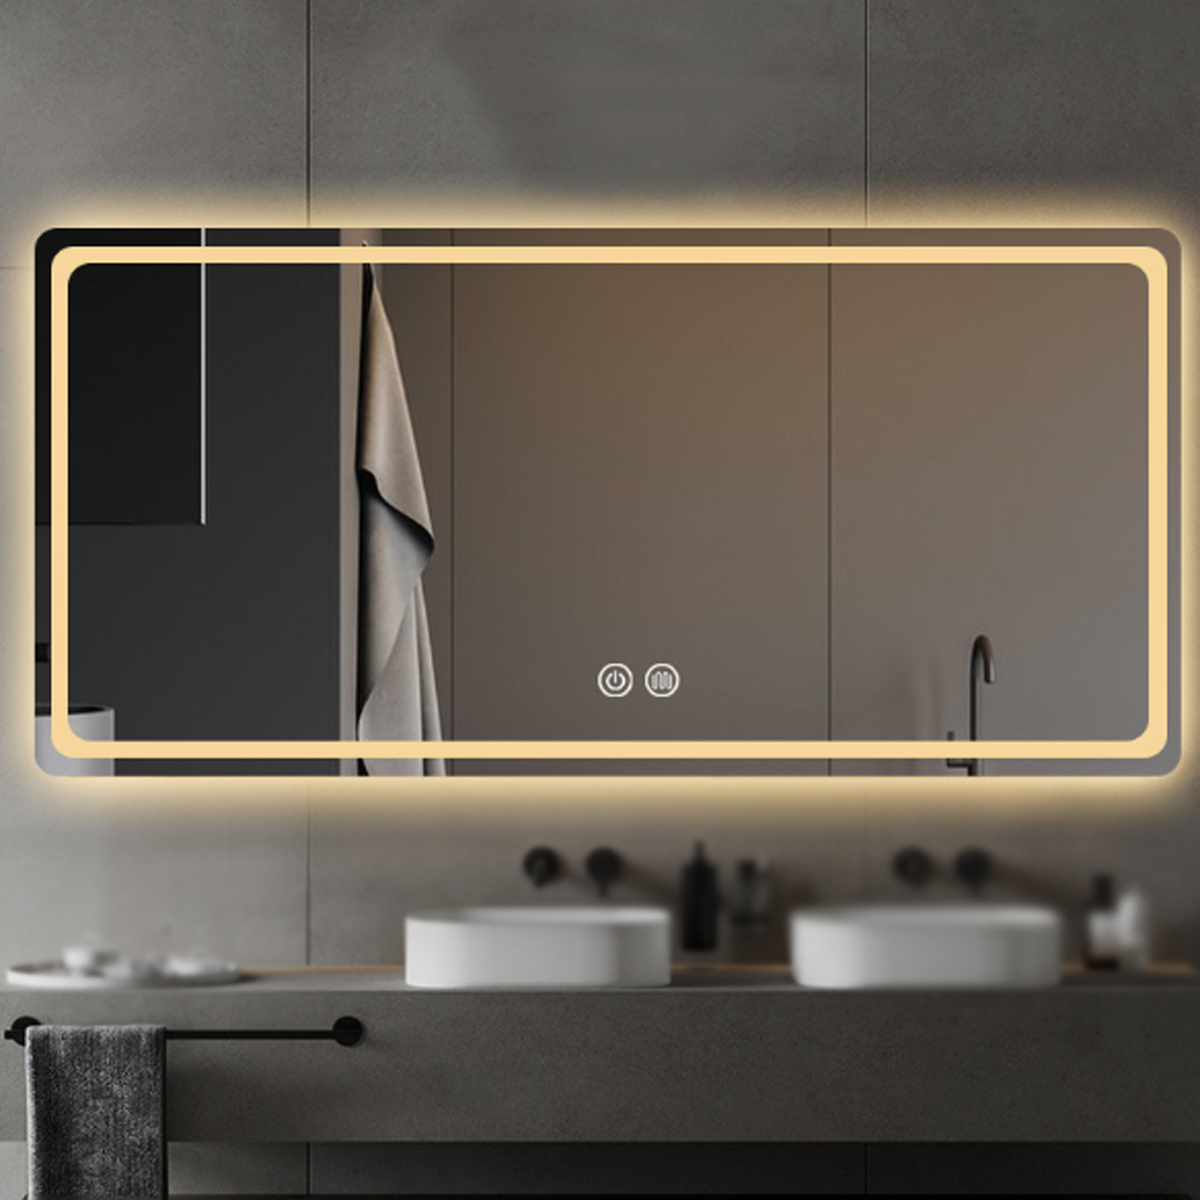 Smart dimmbar, Entfrosten Bathroom BYTELIKE Dreifarbiges Dreifarbig LED Dual-Touch-Schalter, elektronisches Licht, Spiegel, Entfoggen Mirror - temperaturgesteuertes